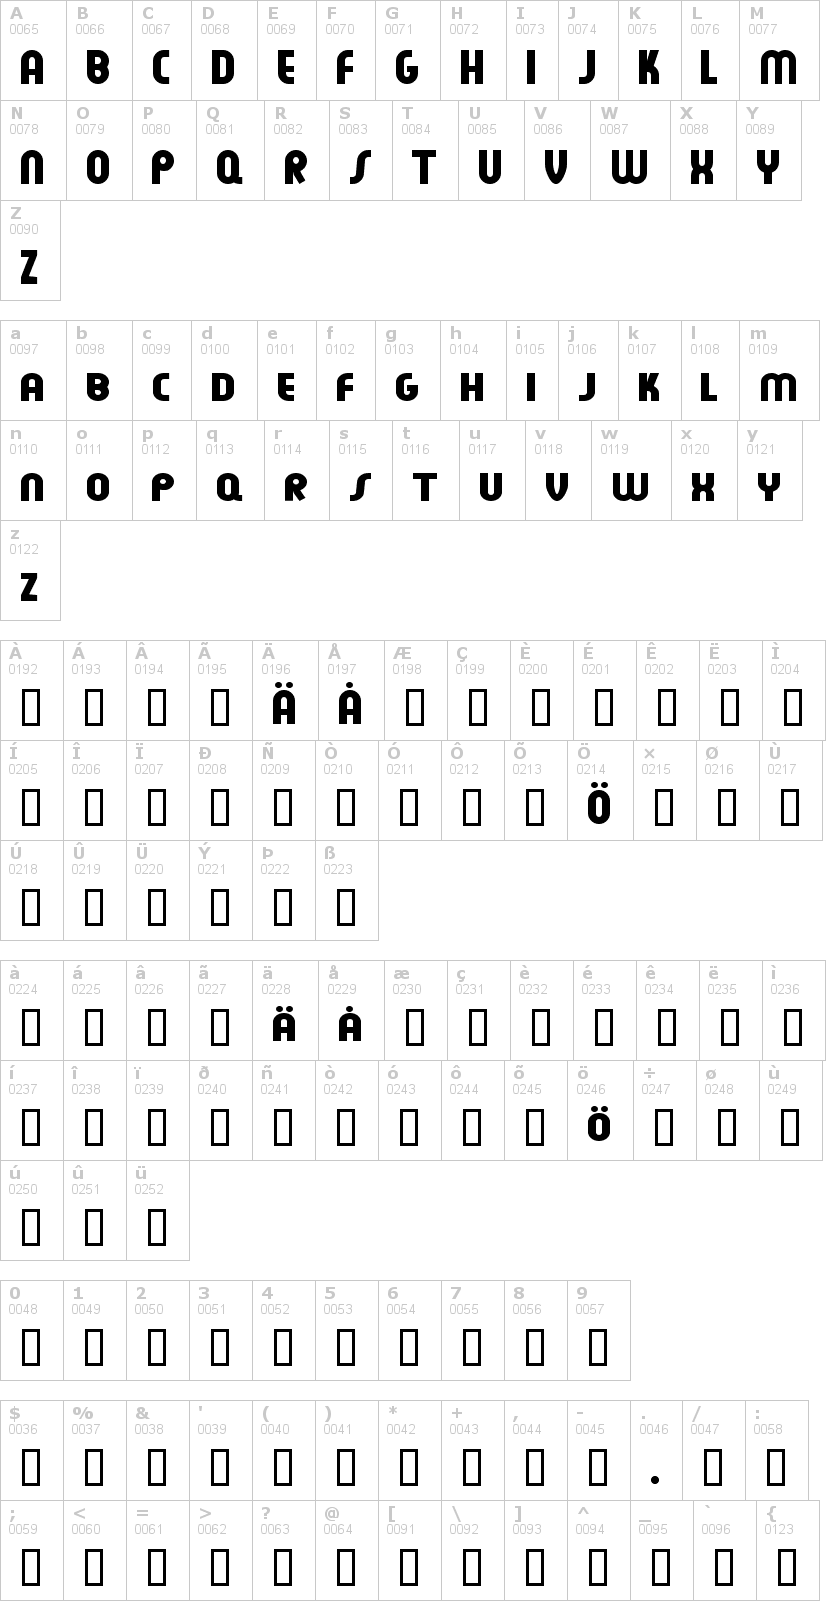 Lettere dell'alfabeto del font feuerfeste con le quali è possibile realizzare adesivi prespaziati